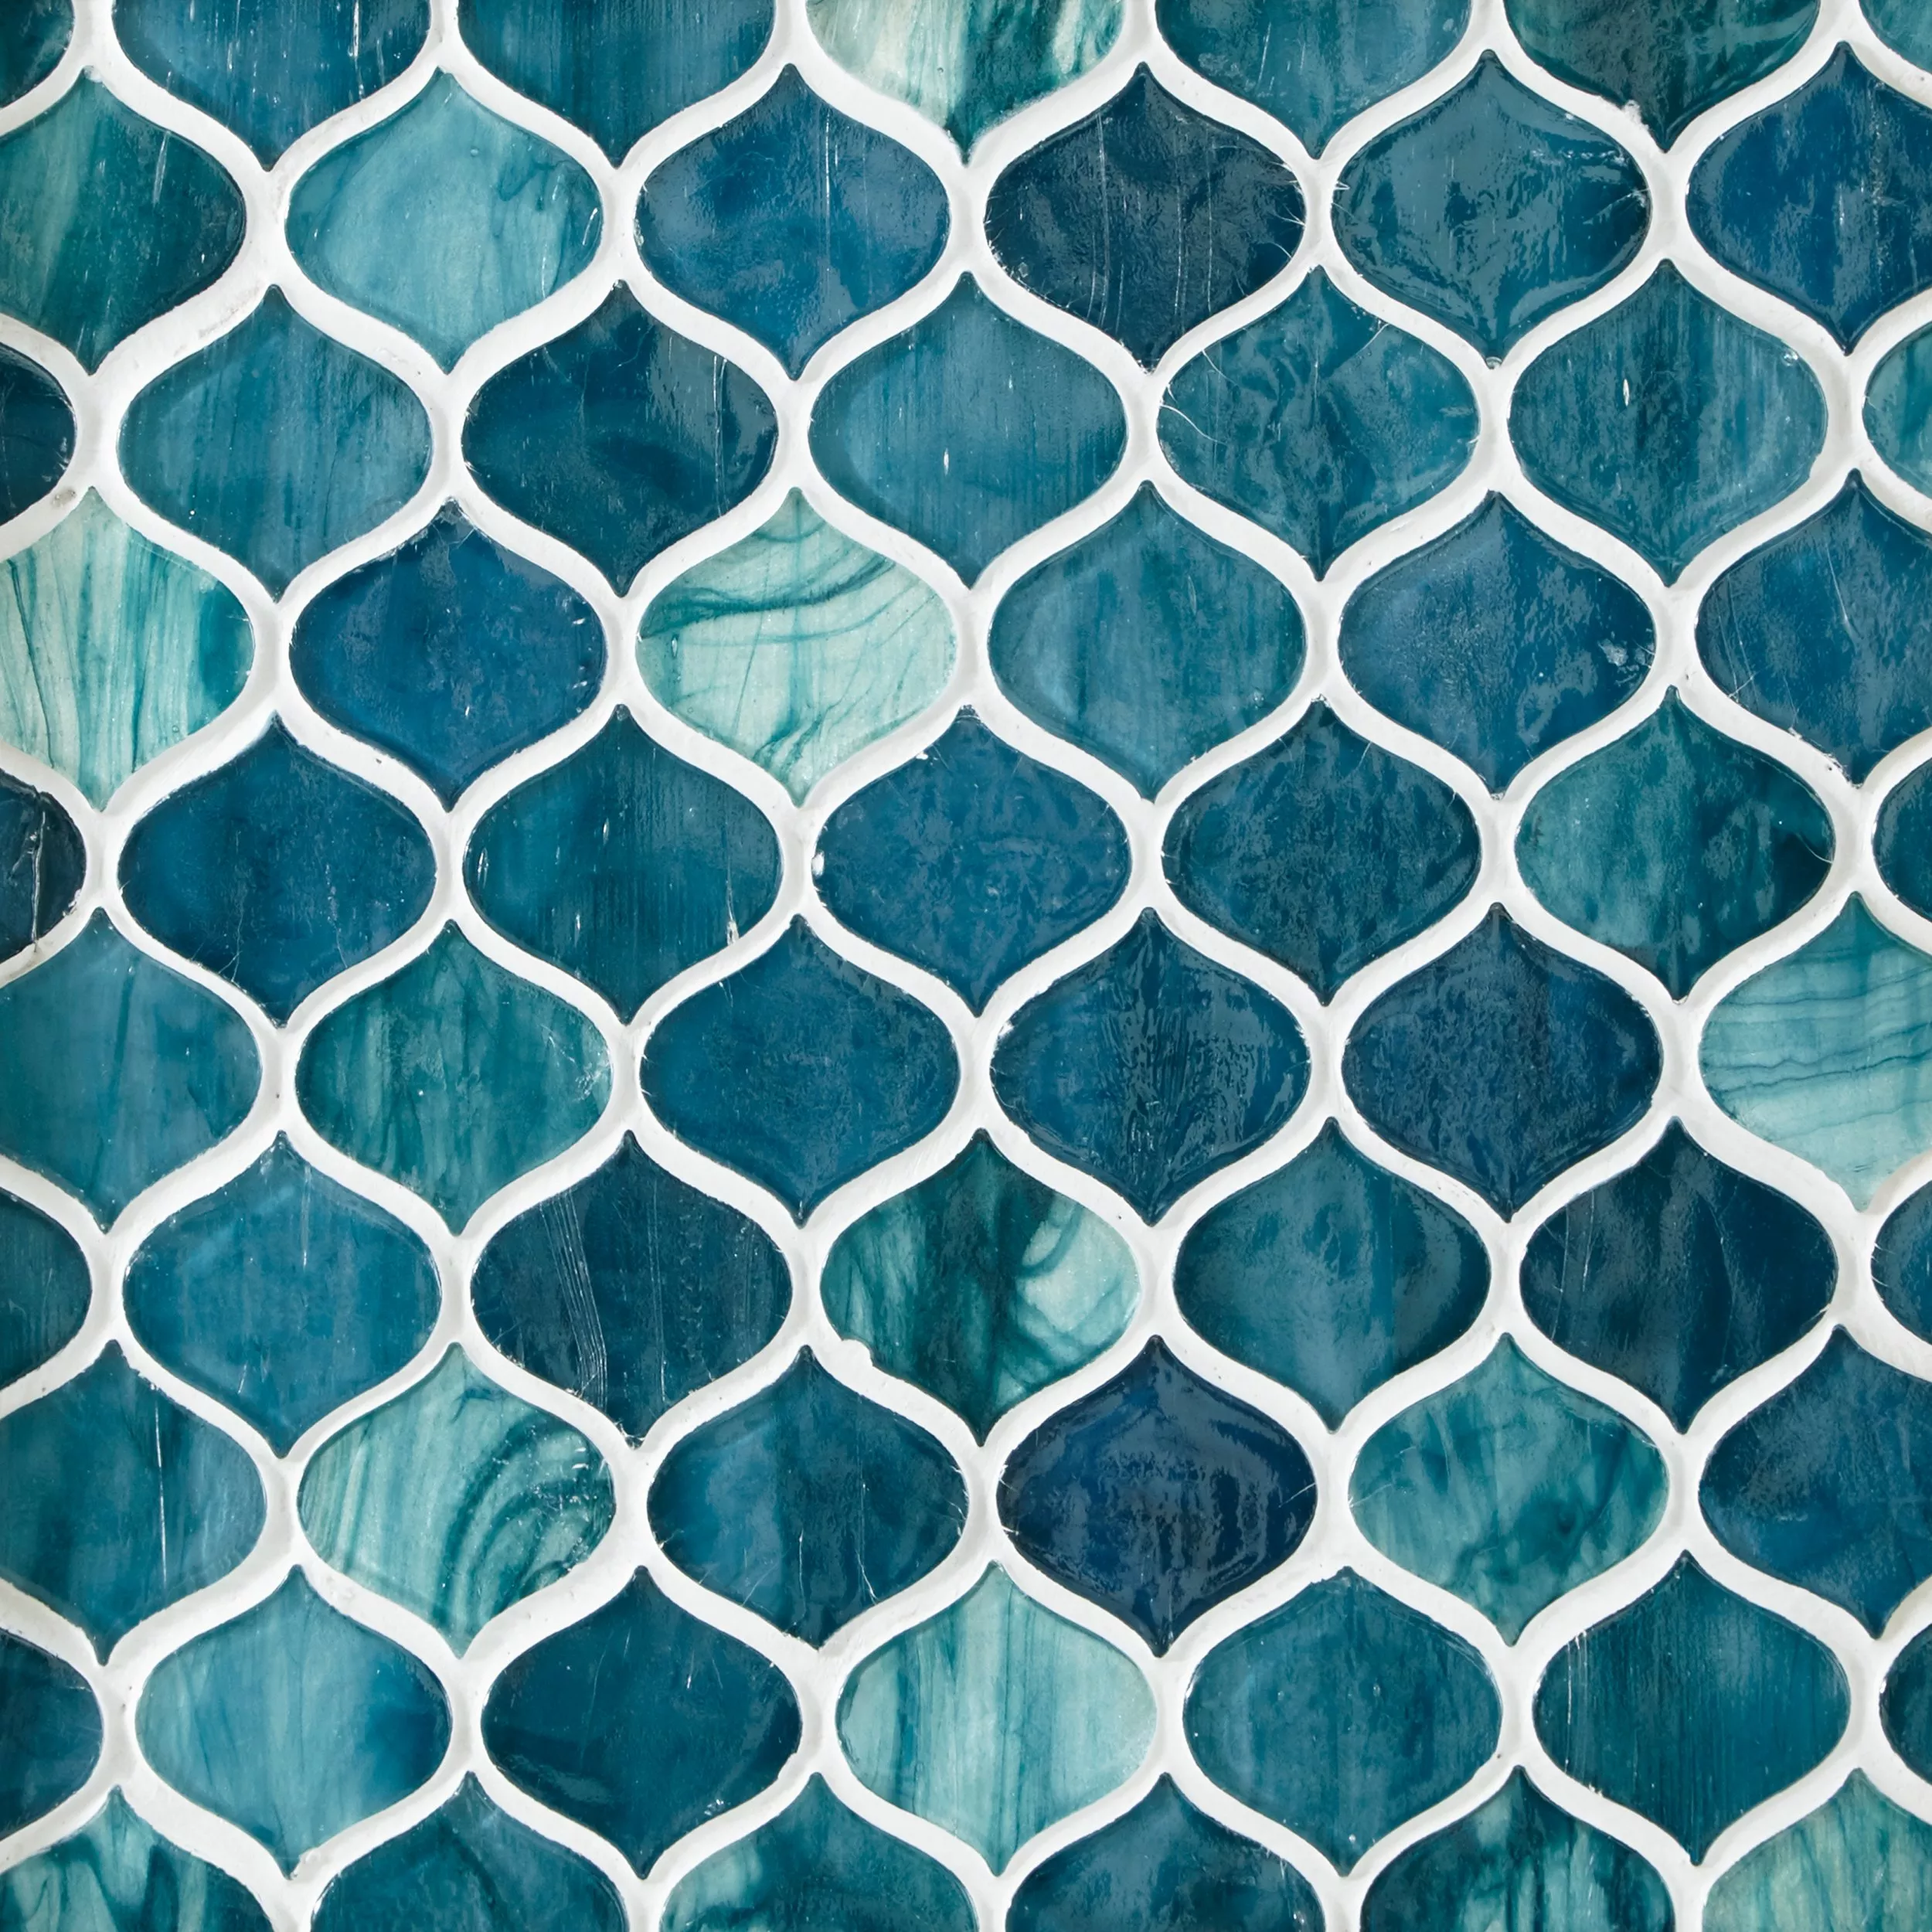 Marina Del Ray Arabesque Glass Mosaic